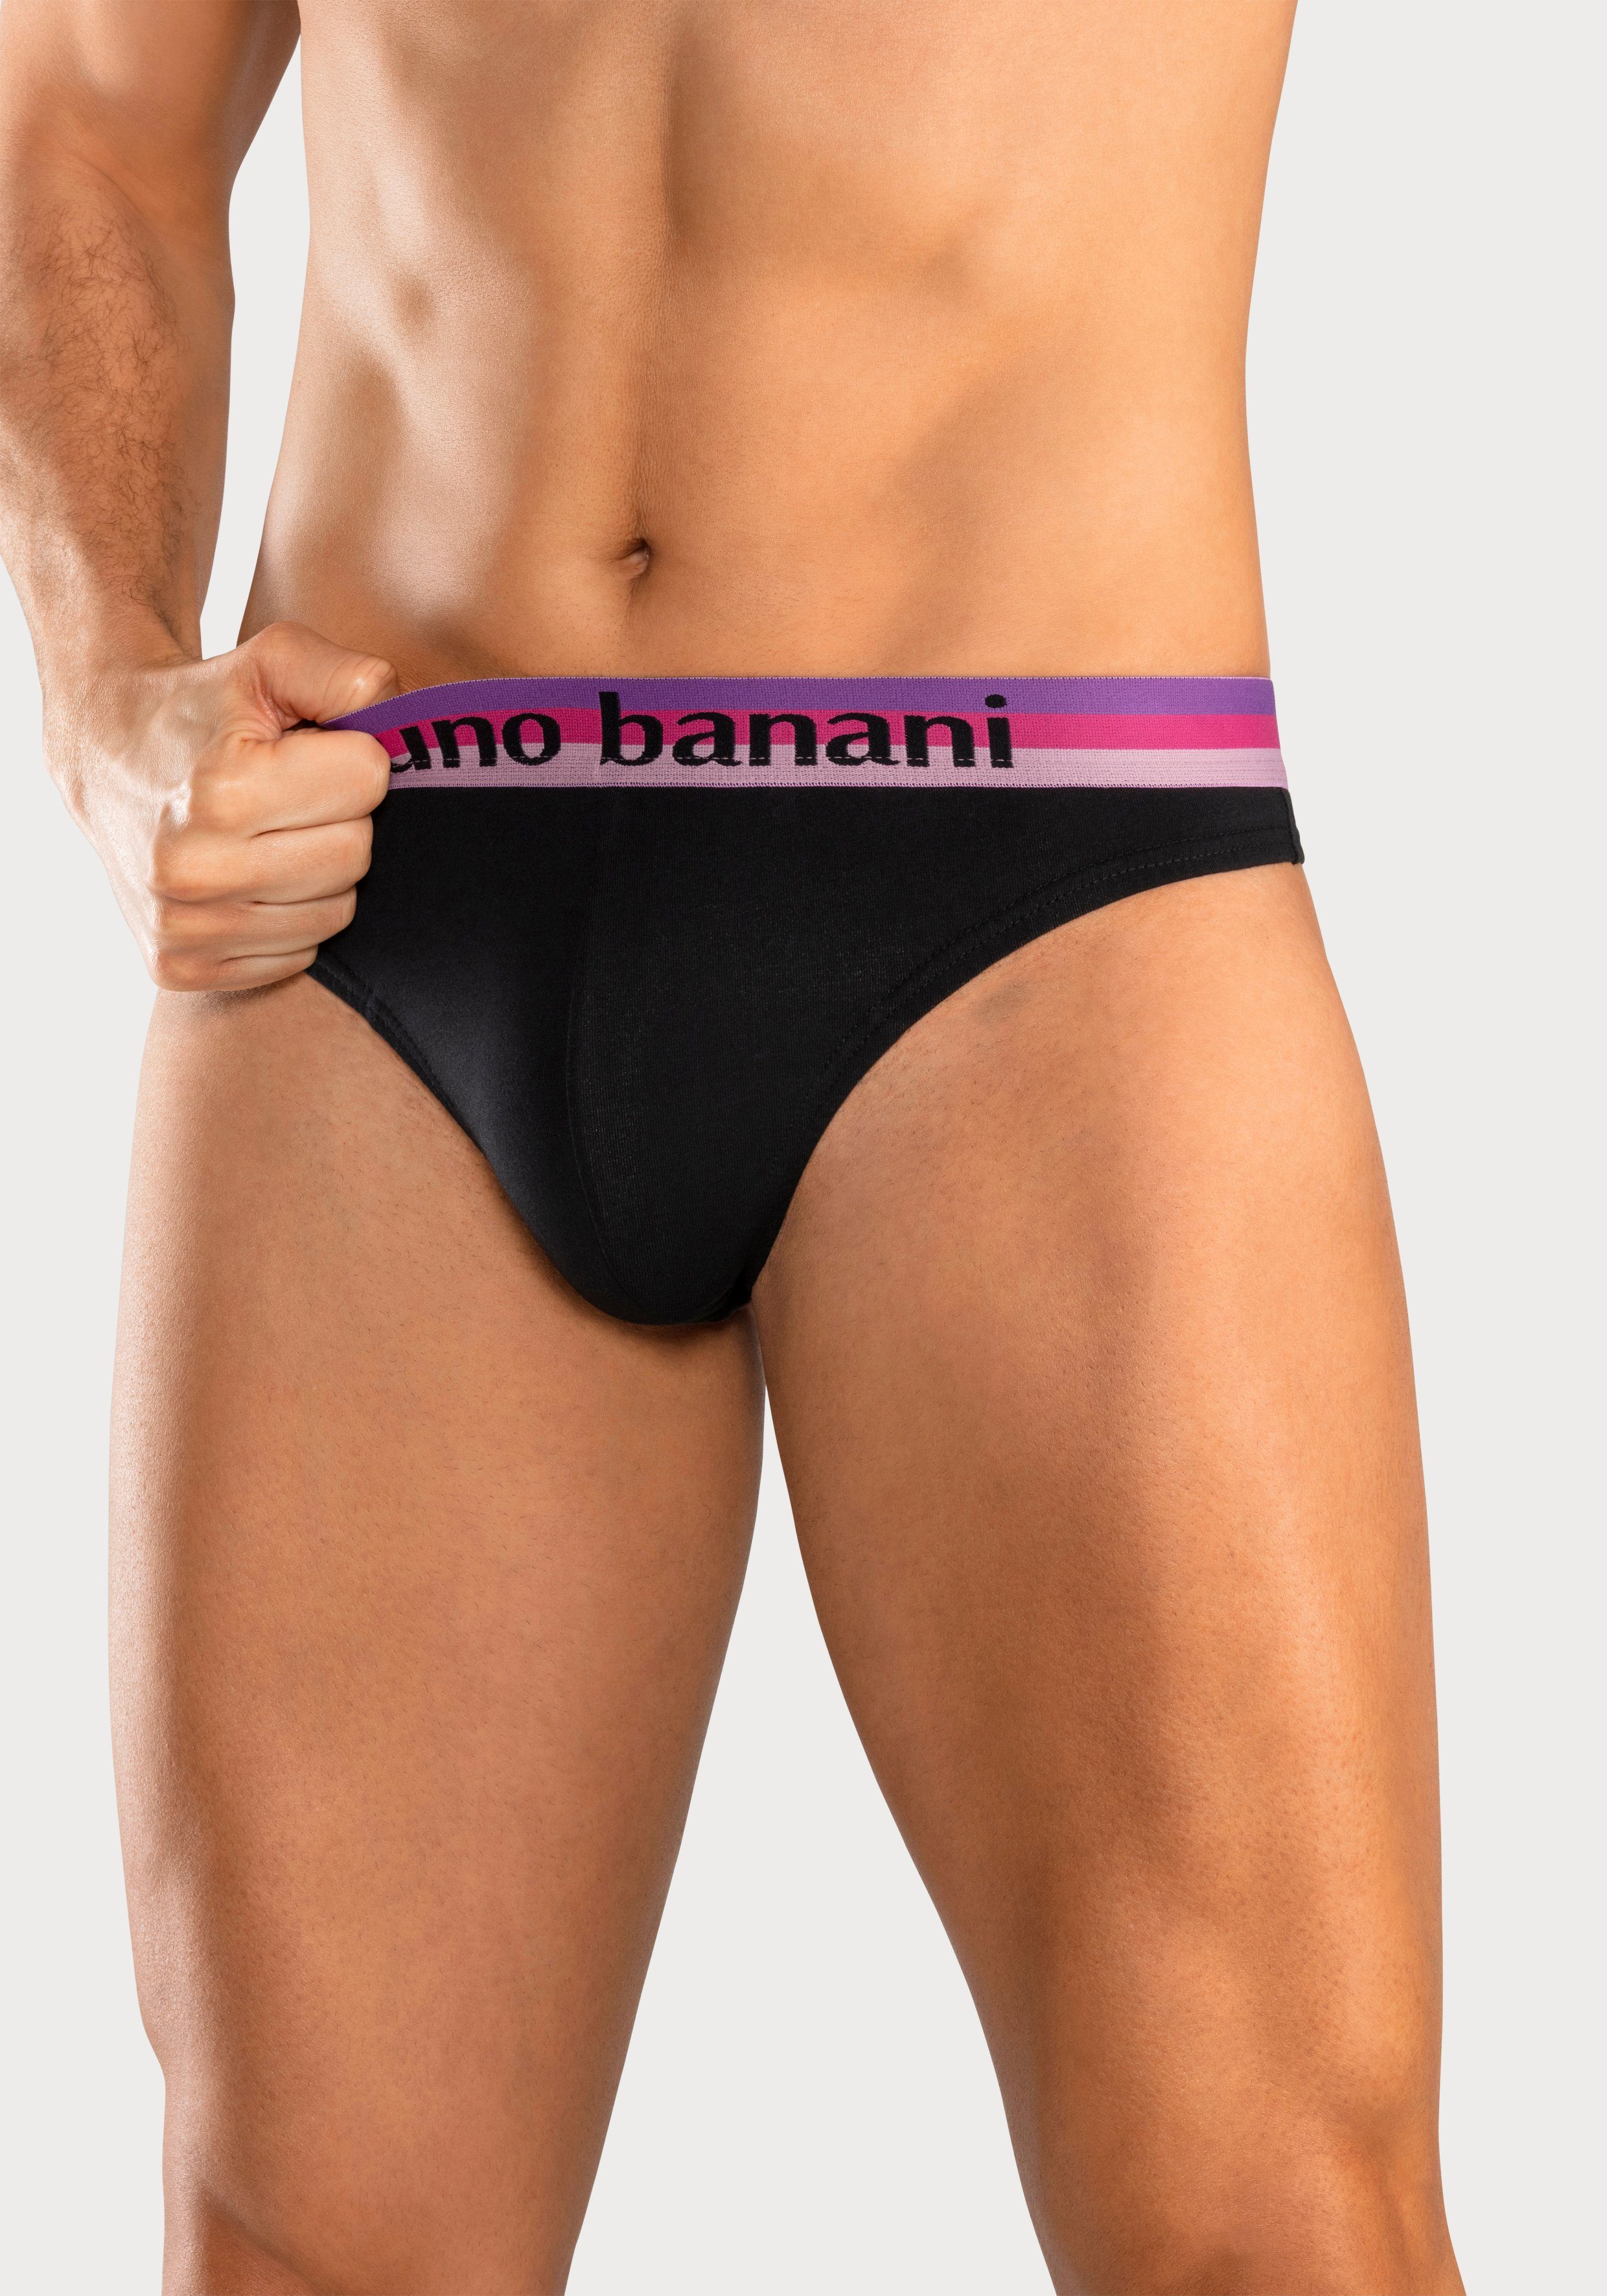 Wäsche/Bademode Unterhosen Bruno Banani String (5 Stück) mit Streifen Logo Webbund